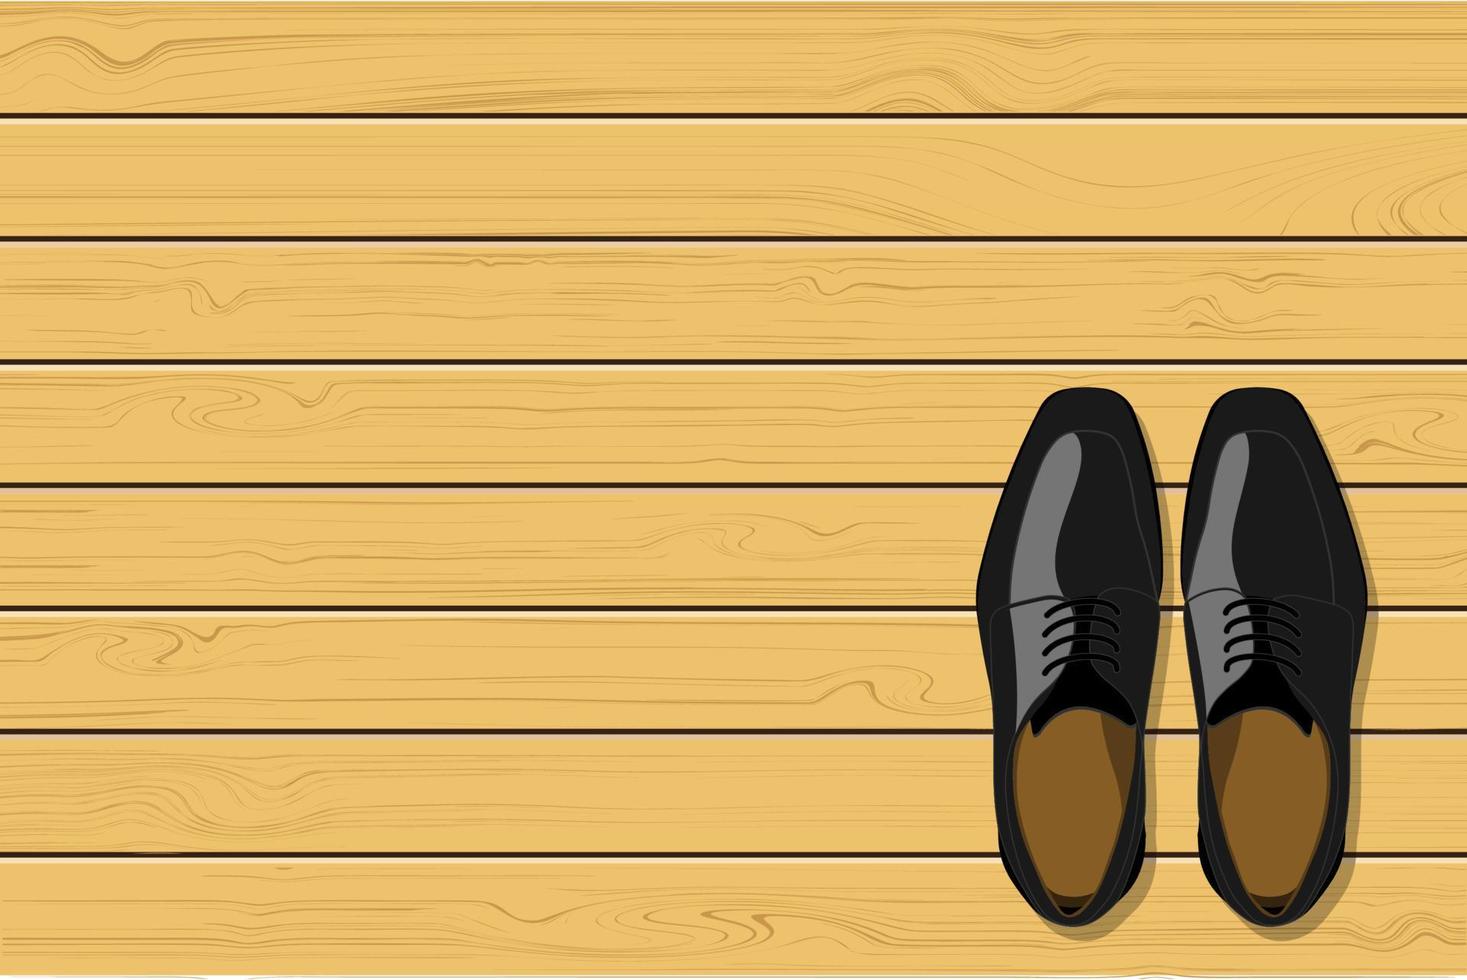 vista superior de sapatos masculinos de couro preto sobre fundo de madeira, ilustração vetorial vetor